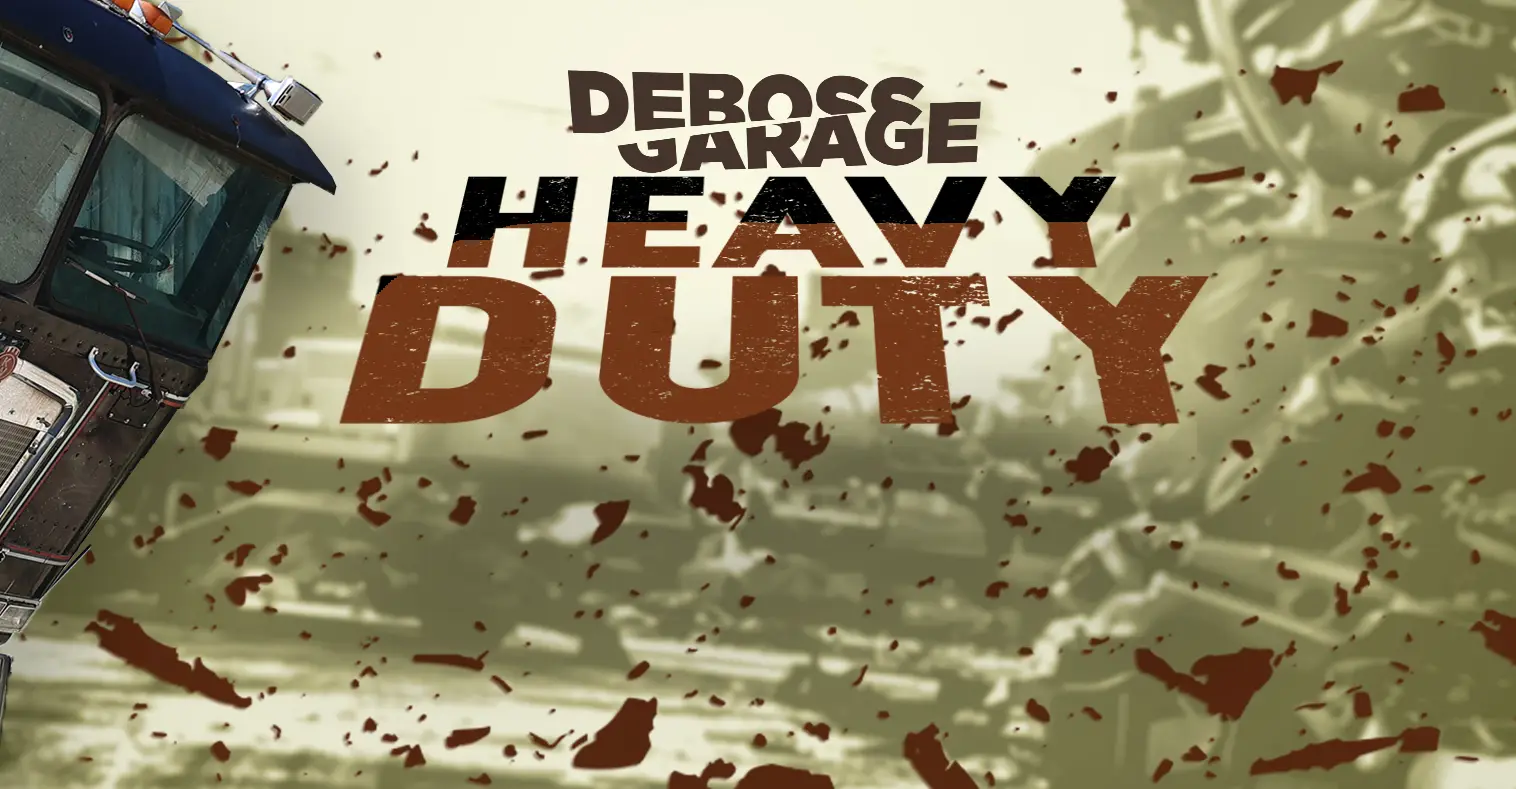 Deboss Heavy Duty TV